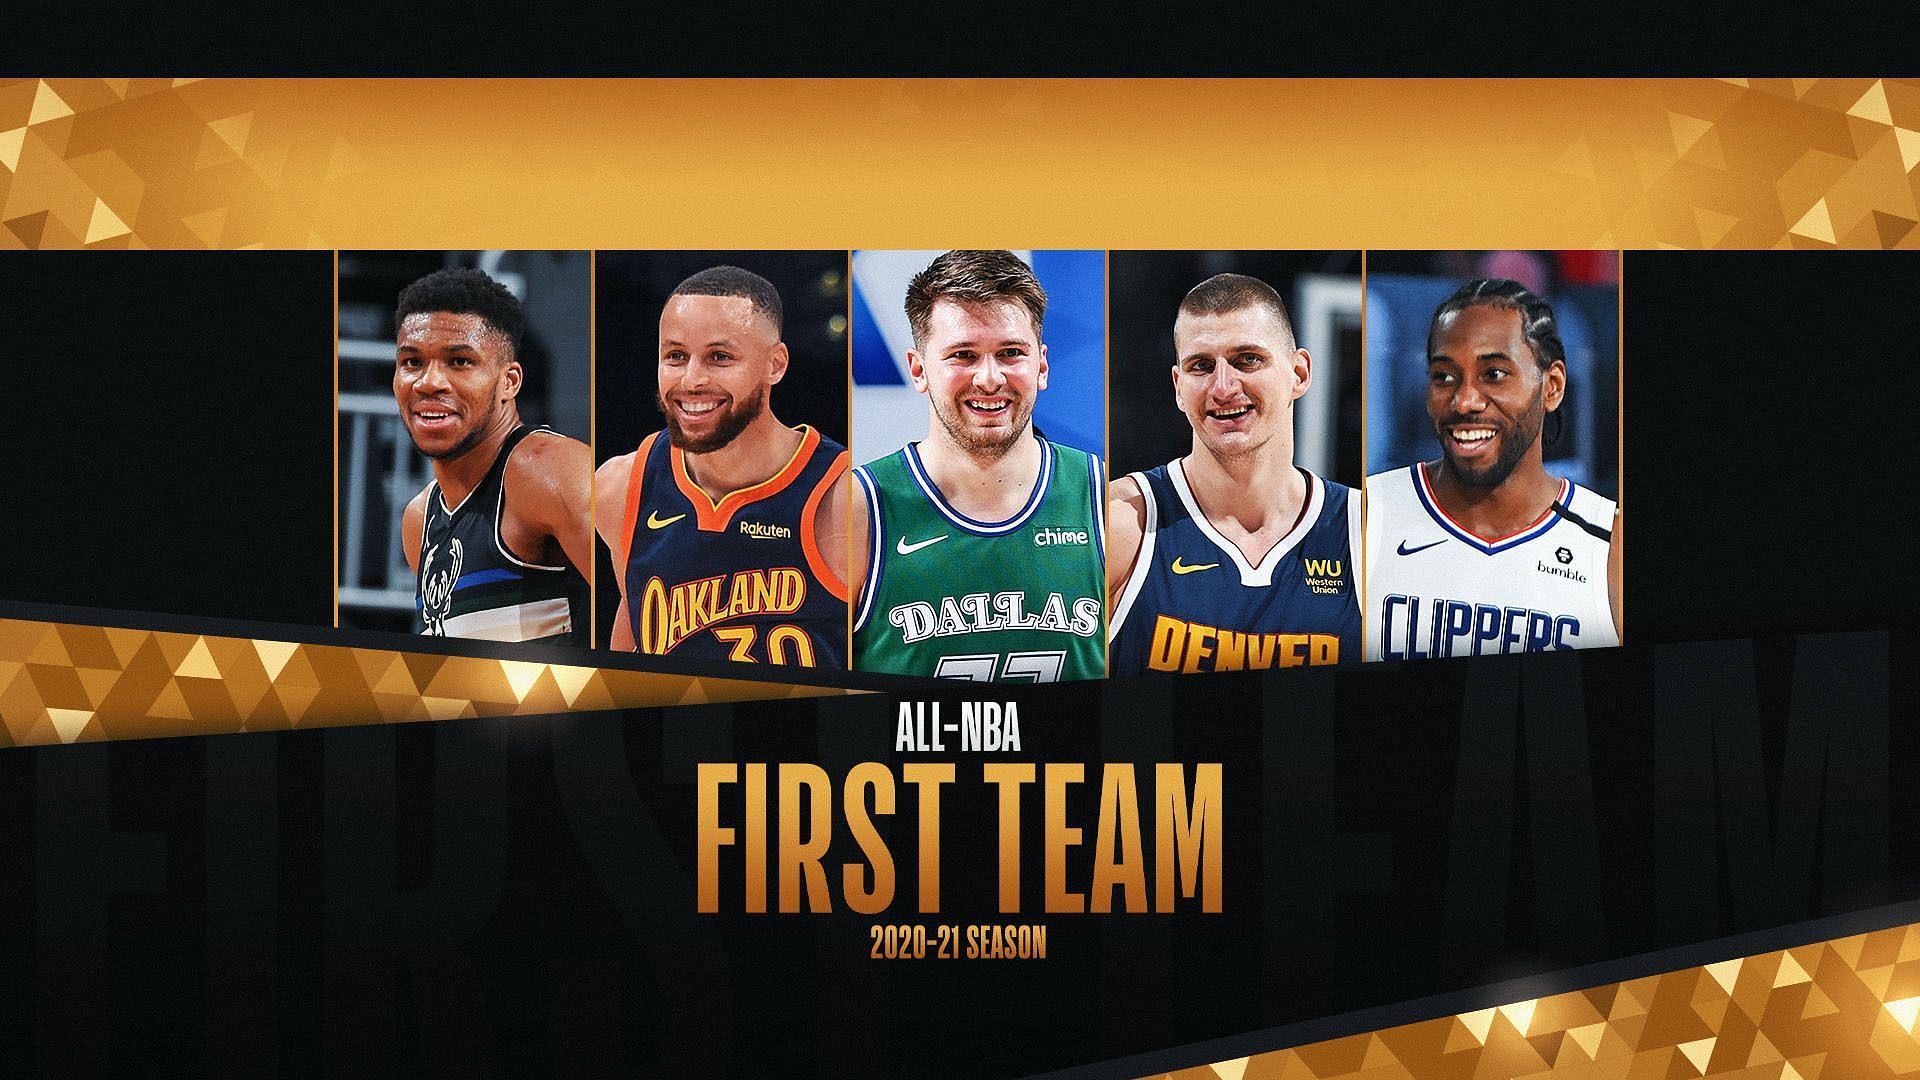 The 2020- 2021 season All-NBA First team.